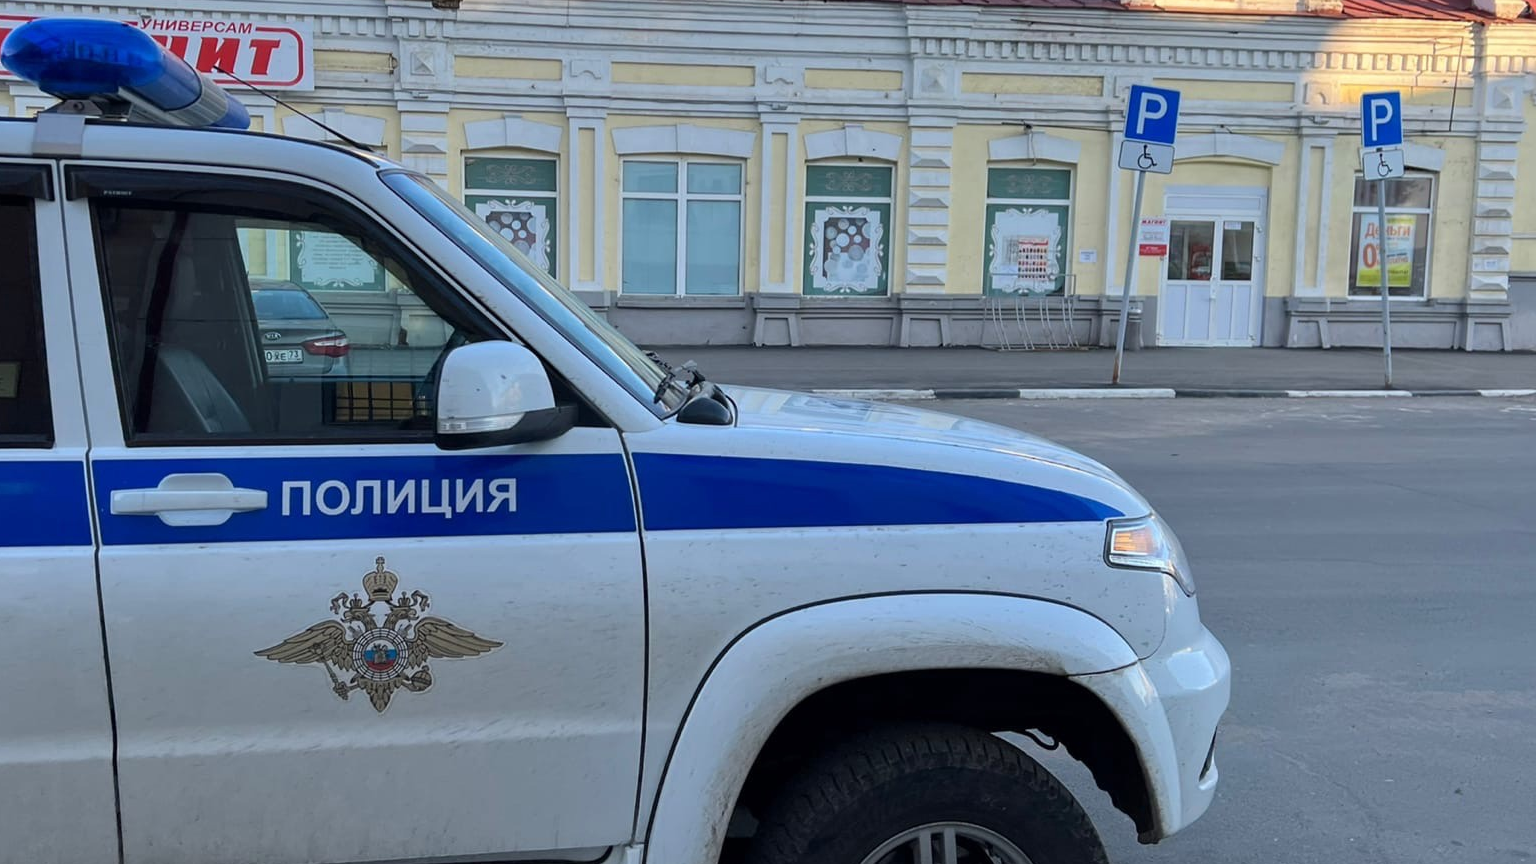 Пропавшего 11-летнего мальчика из Ульяновска нашли полицейские